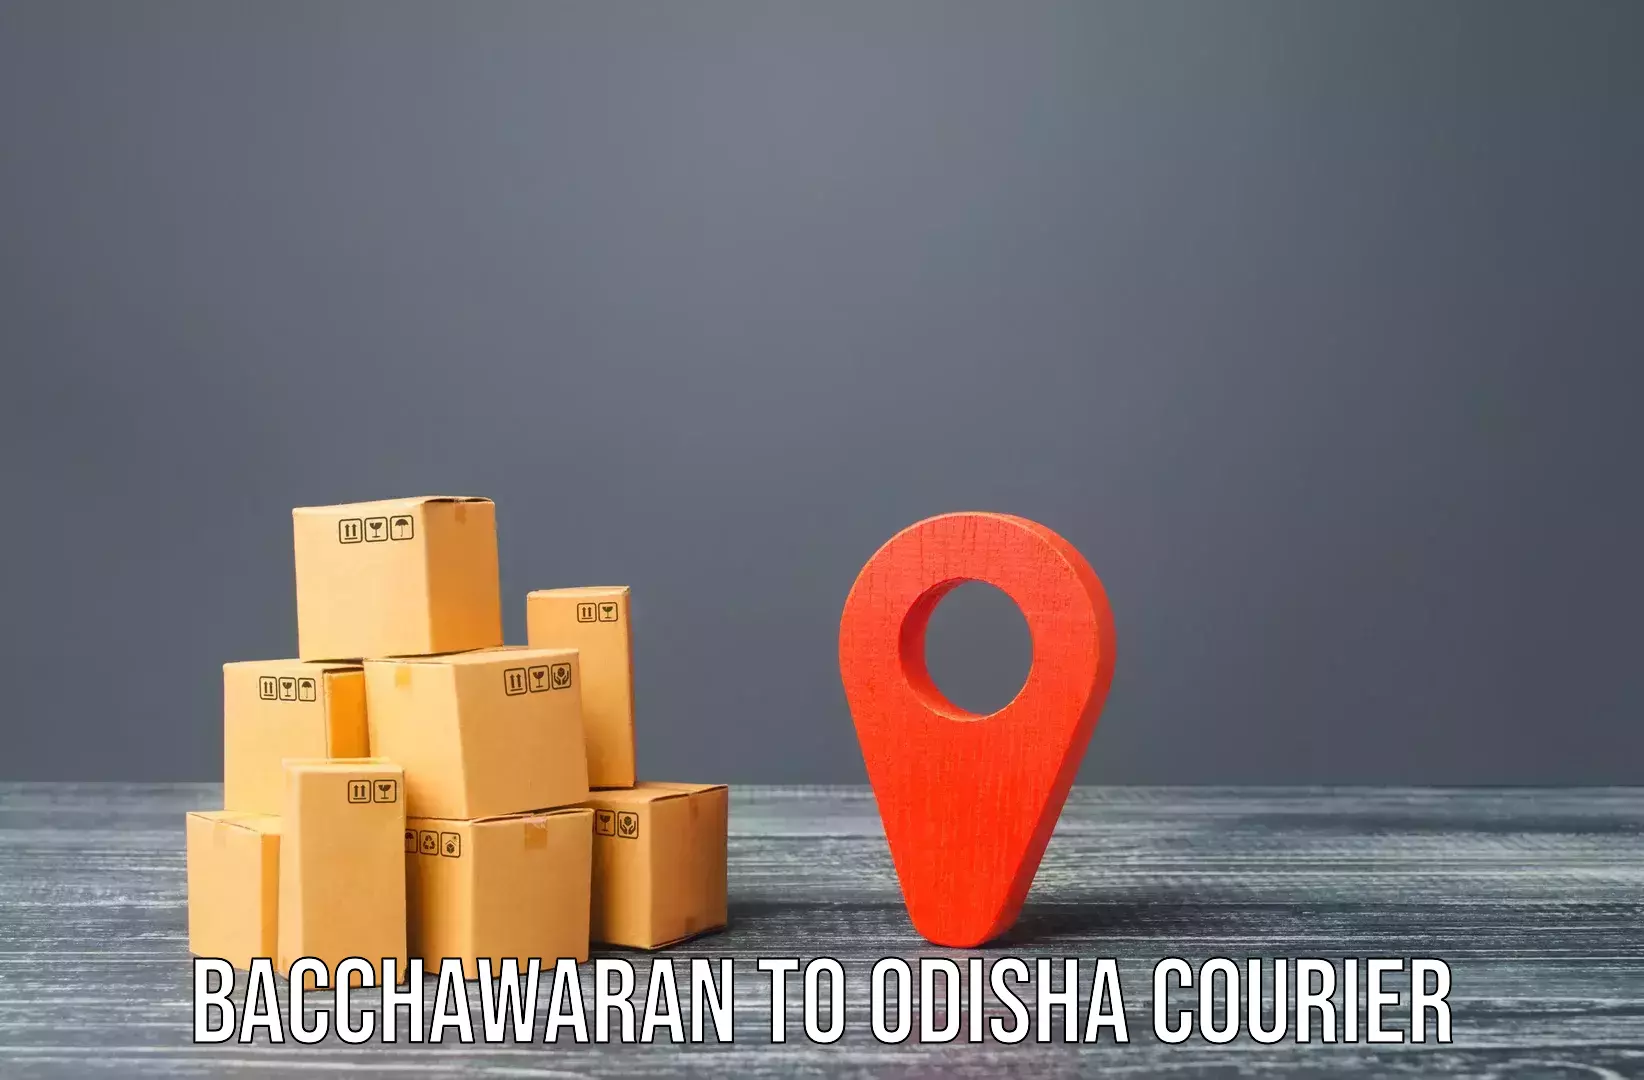 Home moving and storage Bacchawaran to Dhamanagar